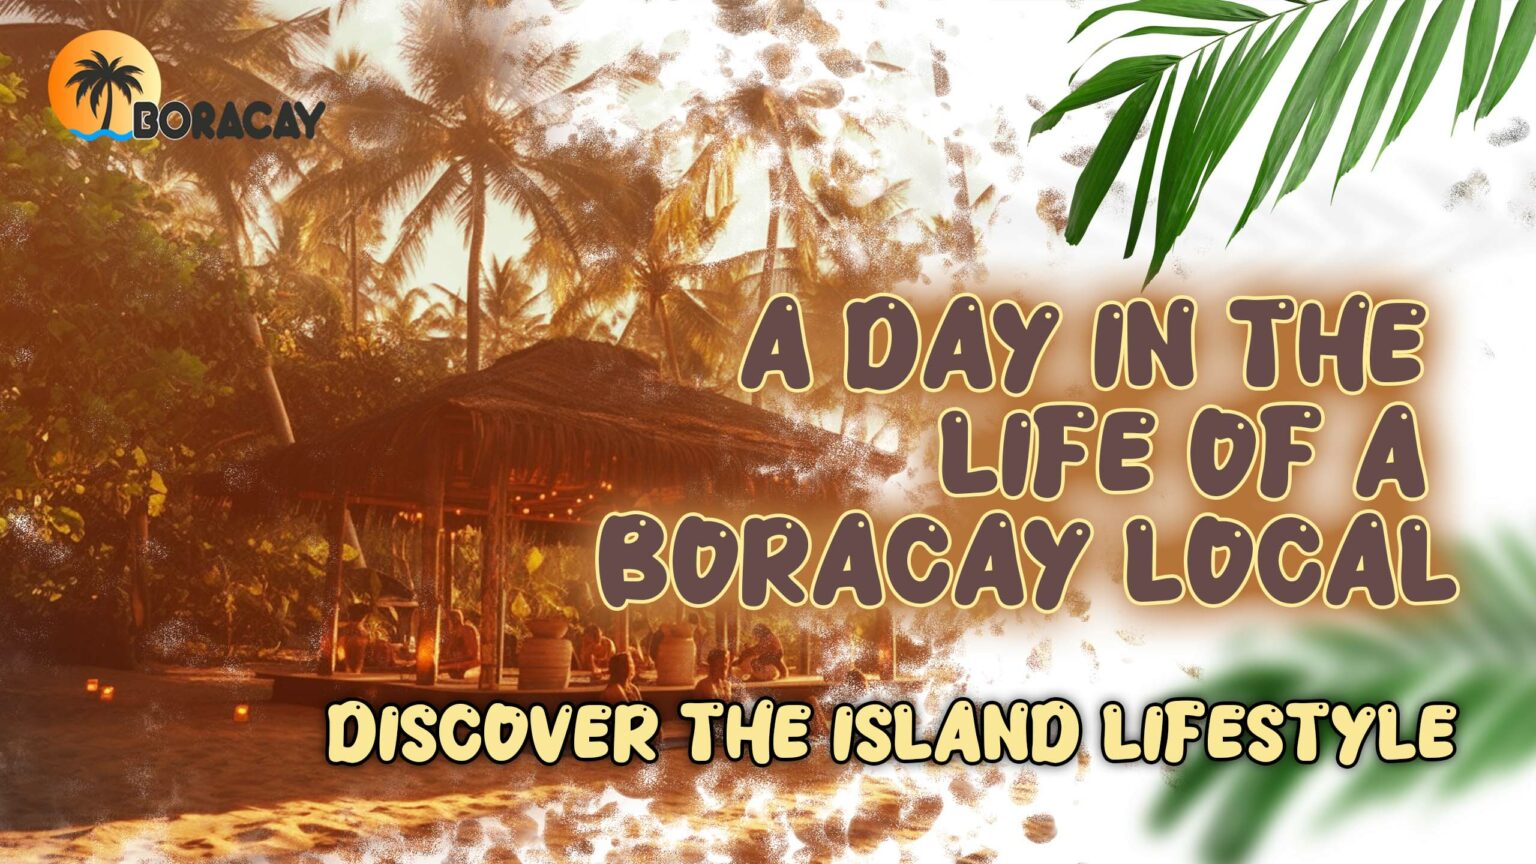 Life of a Boracay Local